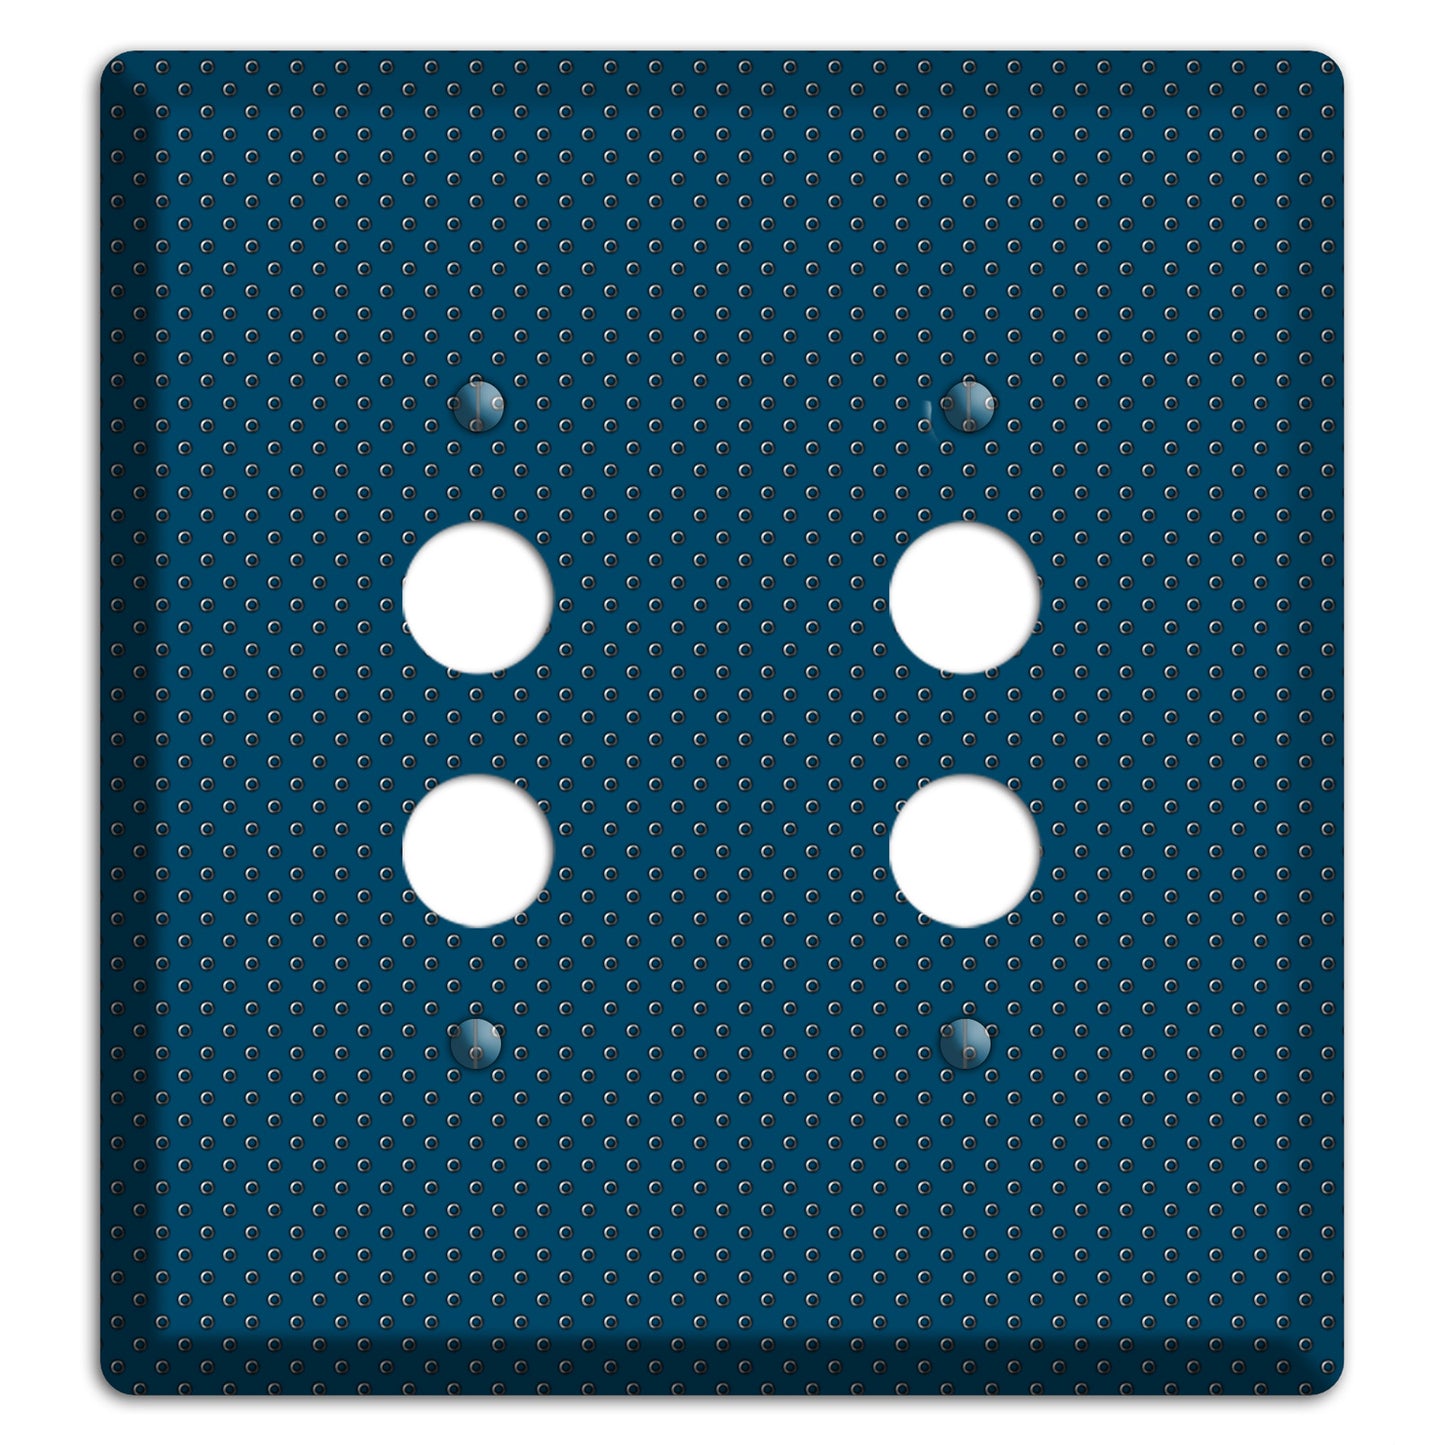 Blue Small Dots 2 Pushbutton Wallplate